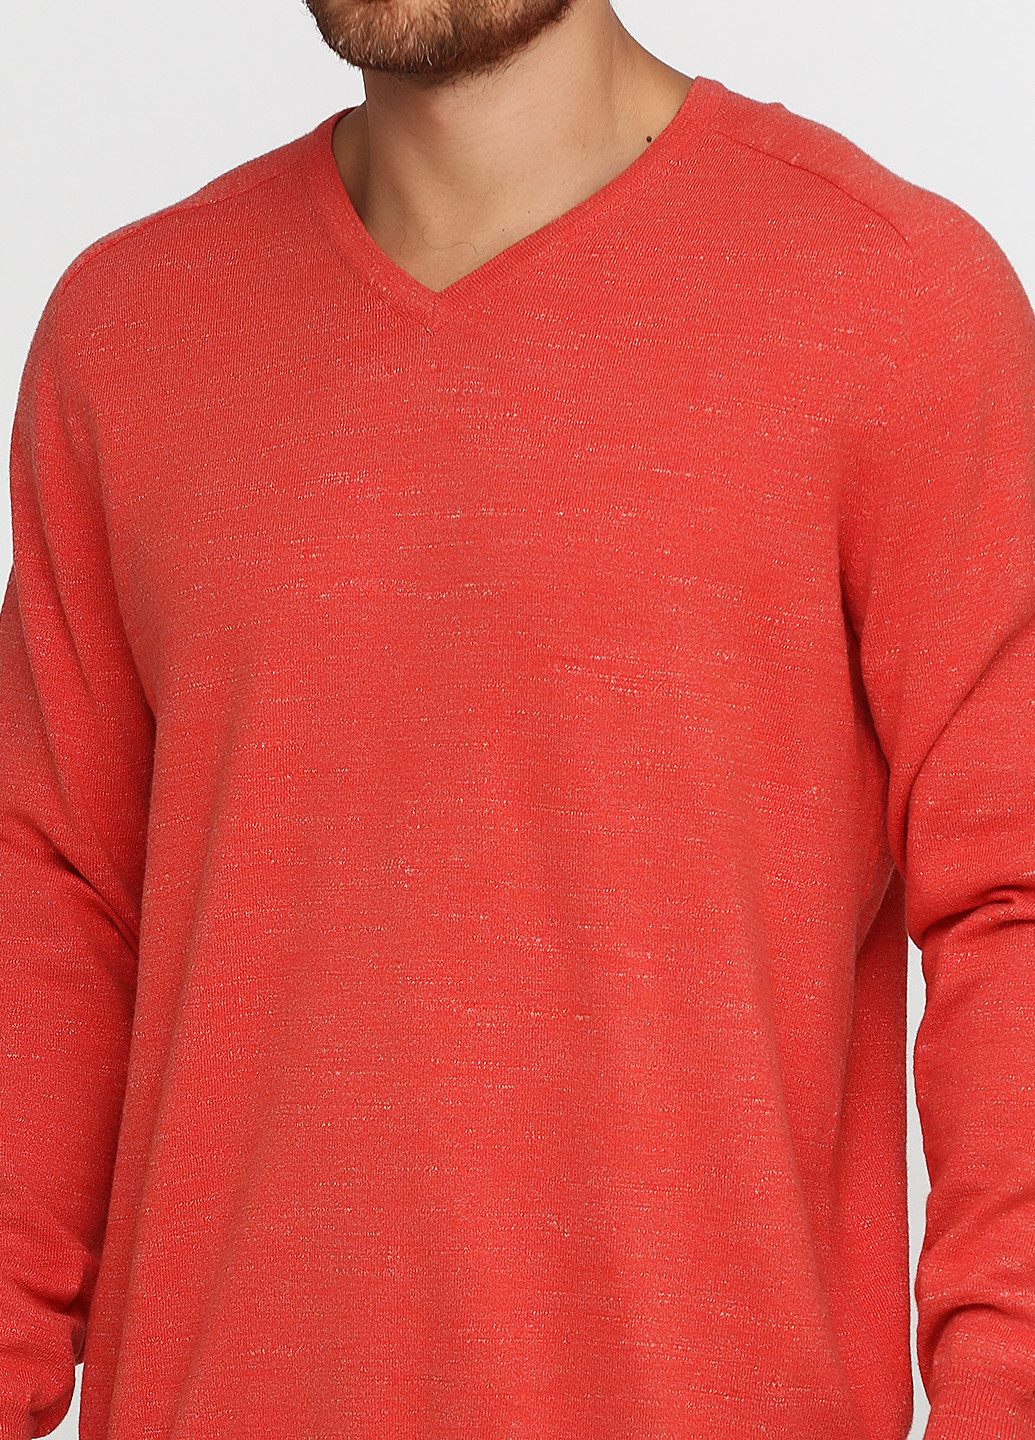 Светло-красный демисезонный пуловер пуловер Camel Active